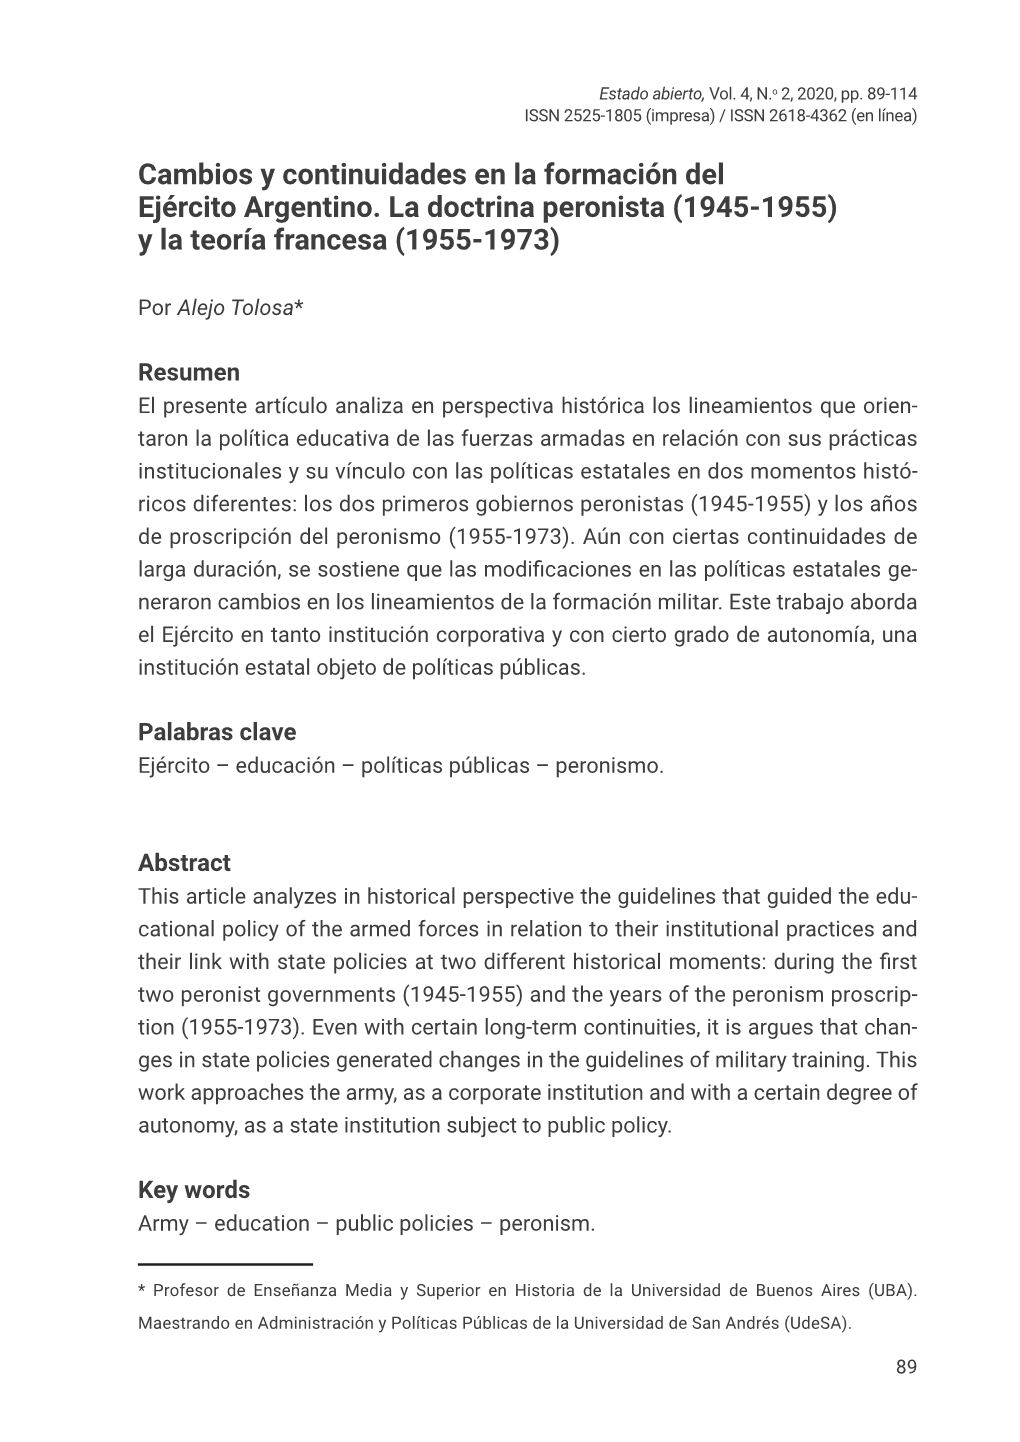 Cambios Y Continuidades En La Formación Del Ejército Argentino. La Doctrina Peronista (1945-1955) Y La Teoría Francesa (1955-1973)